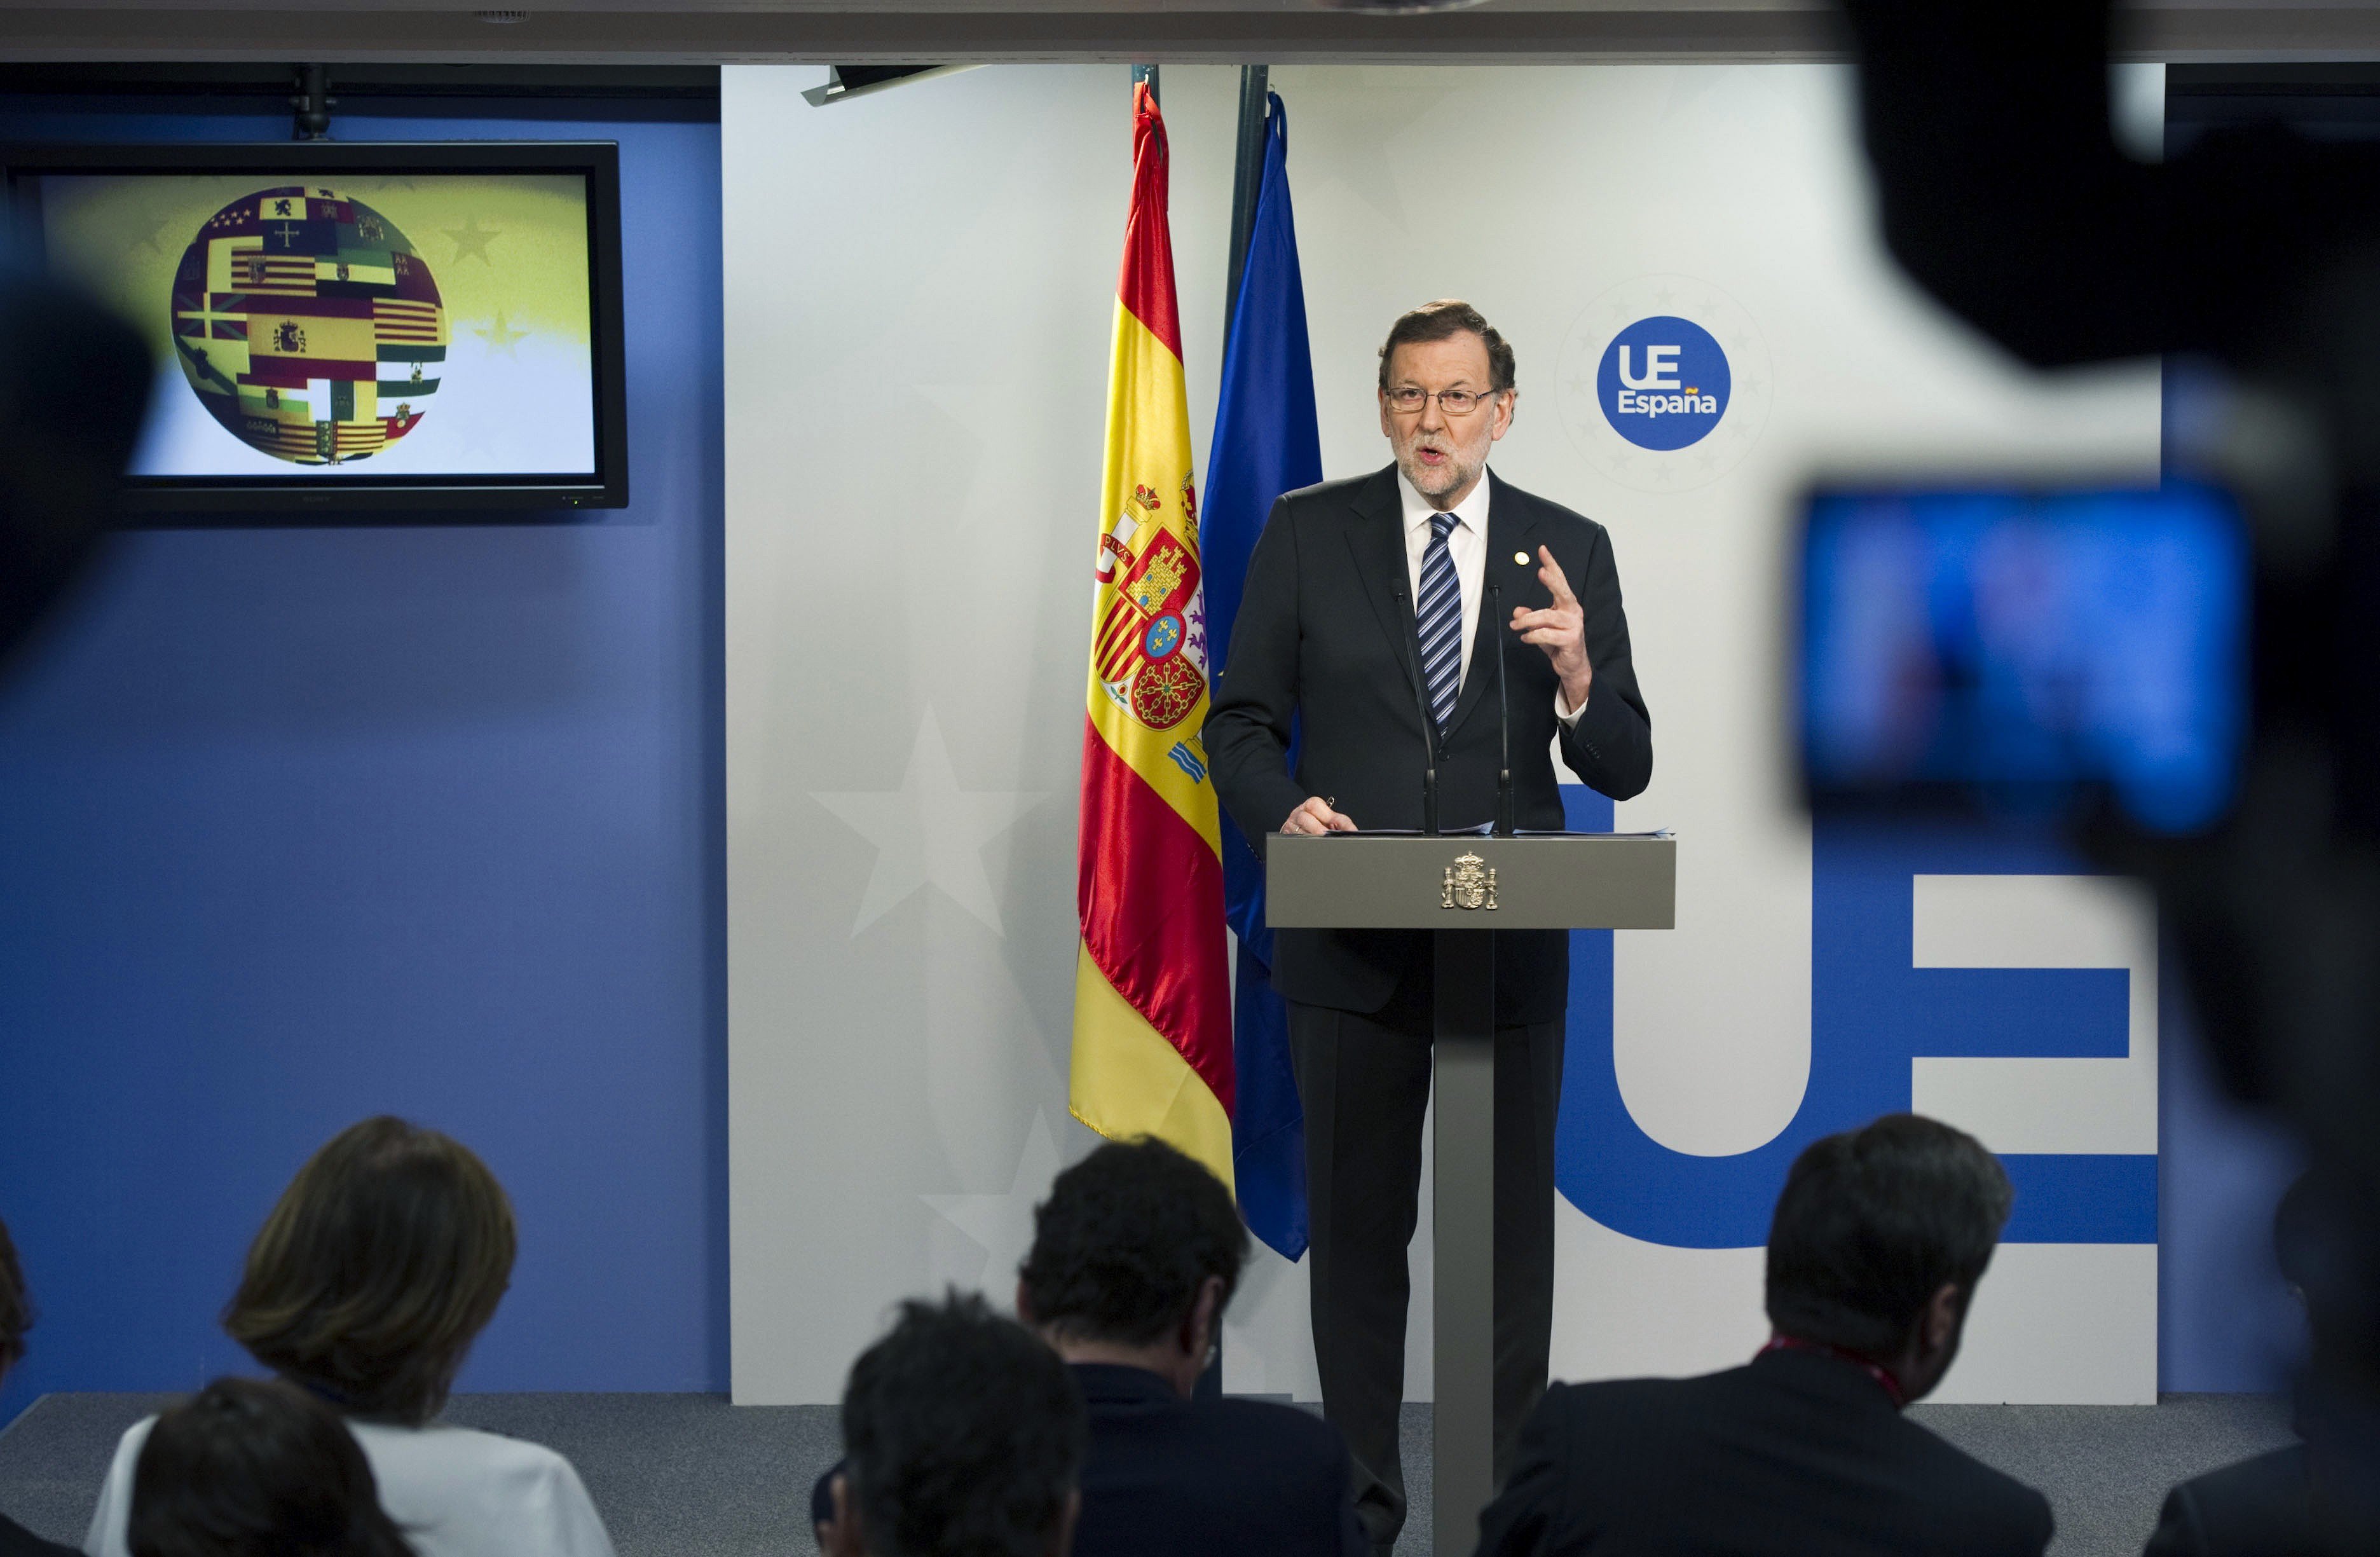 Rajoy vería "magnífico" que Barcelona acogiera la Agencia Europea del Medicamento